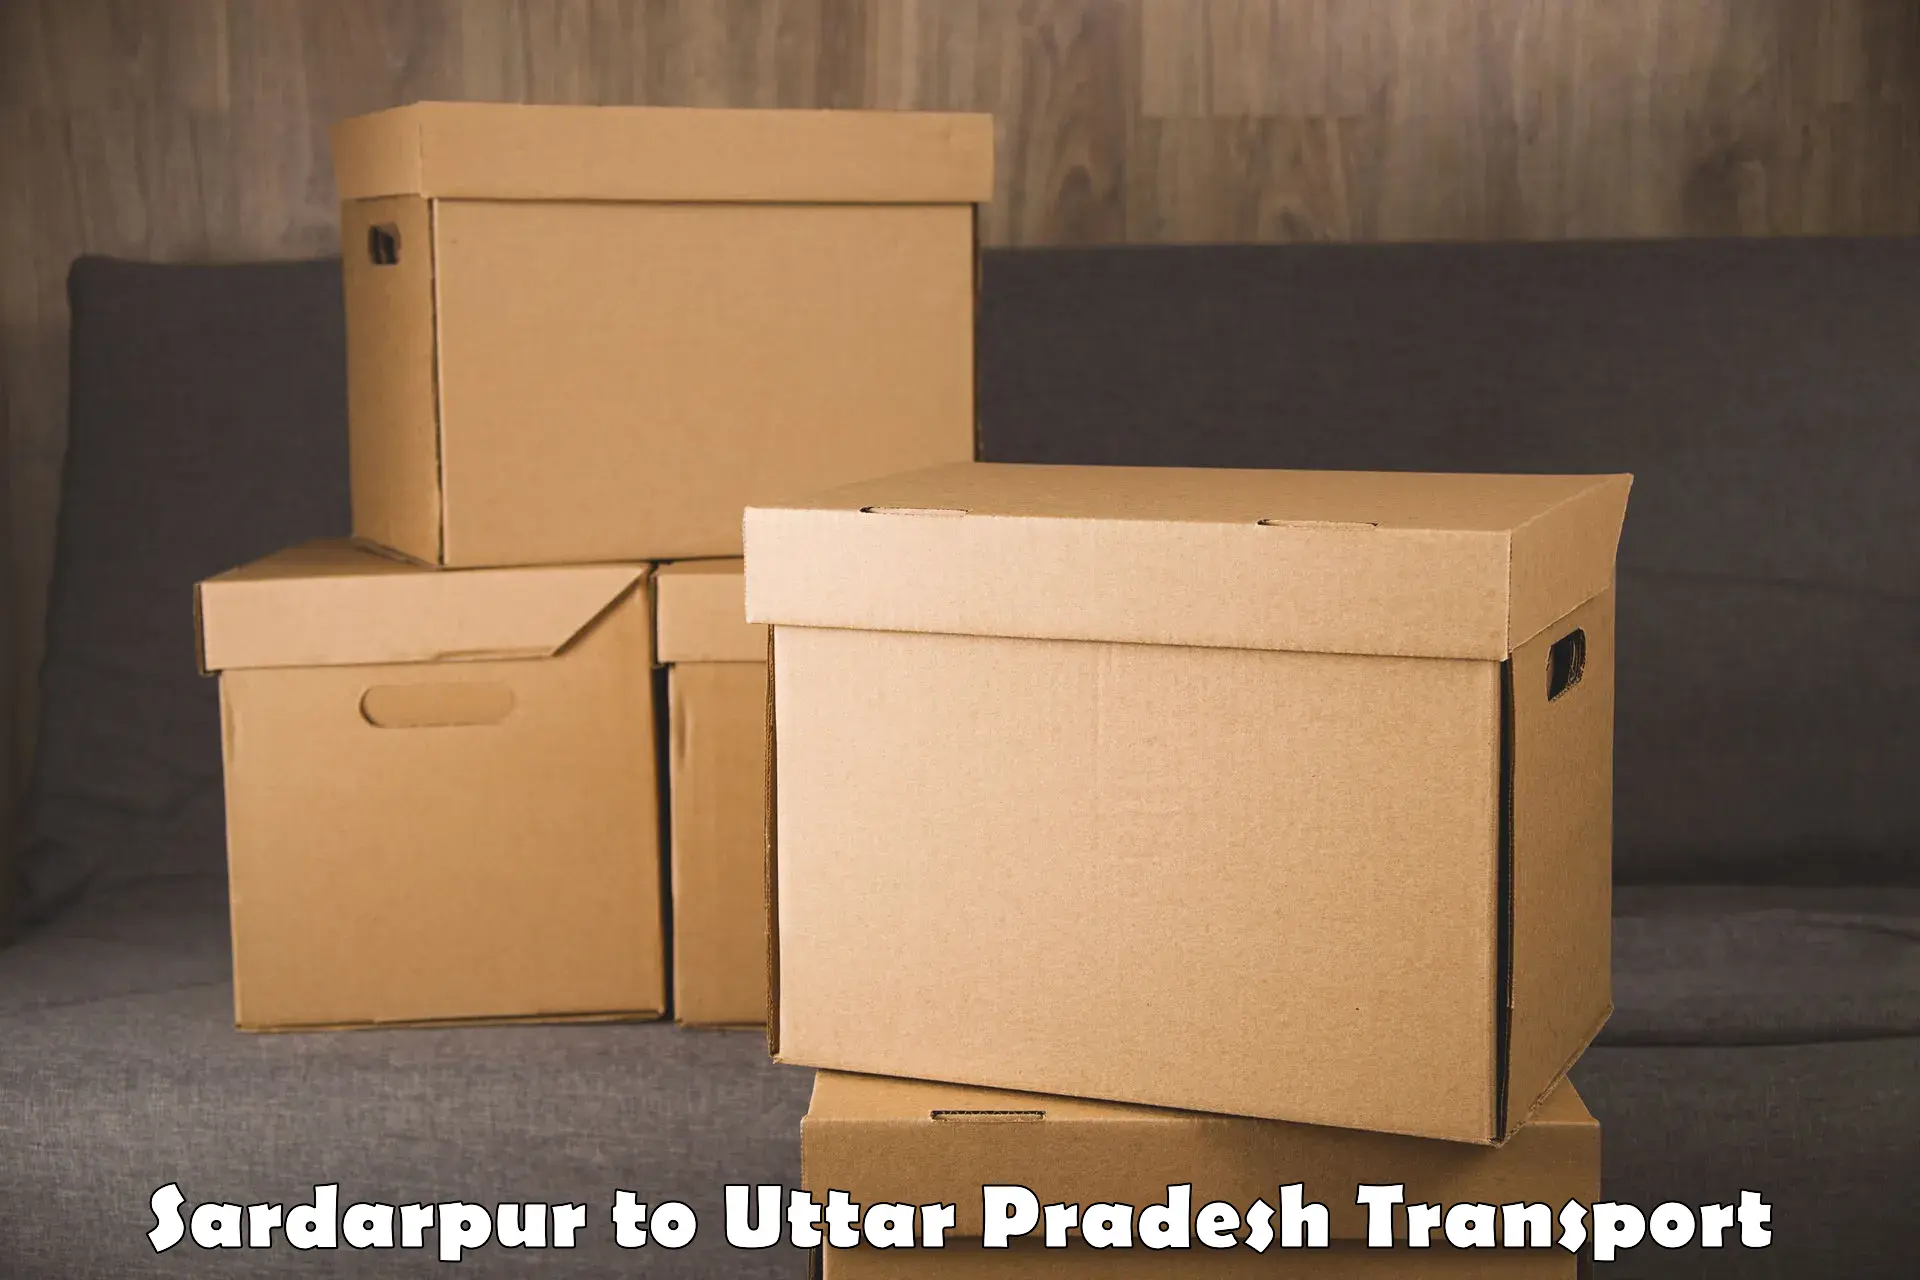 Interstate transport services Sardarpur to Sultanpur